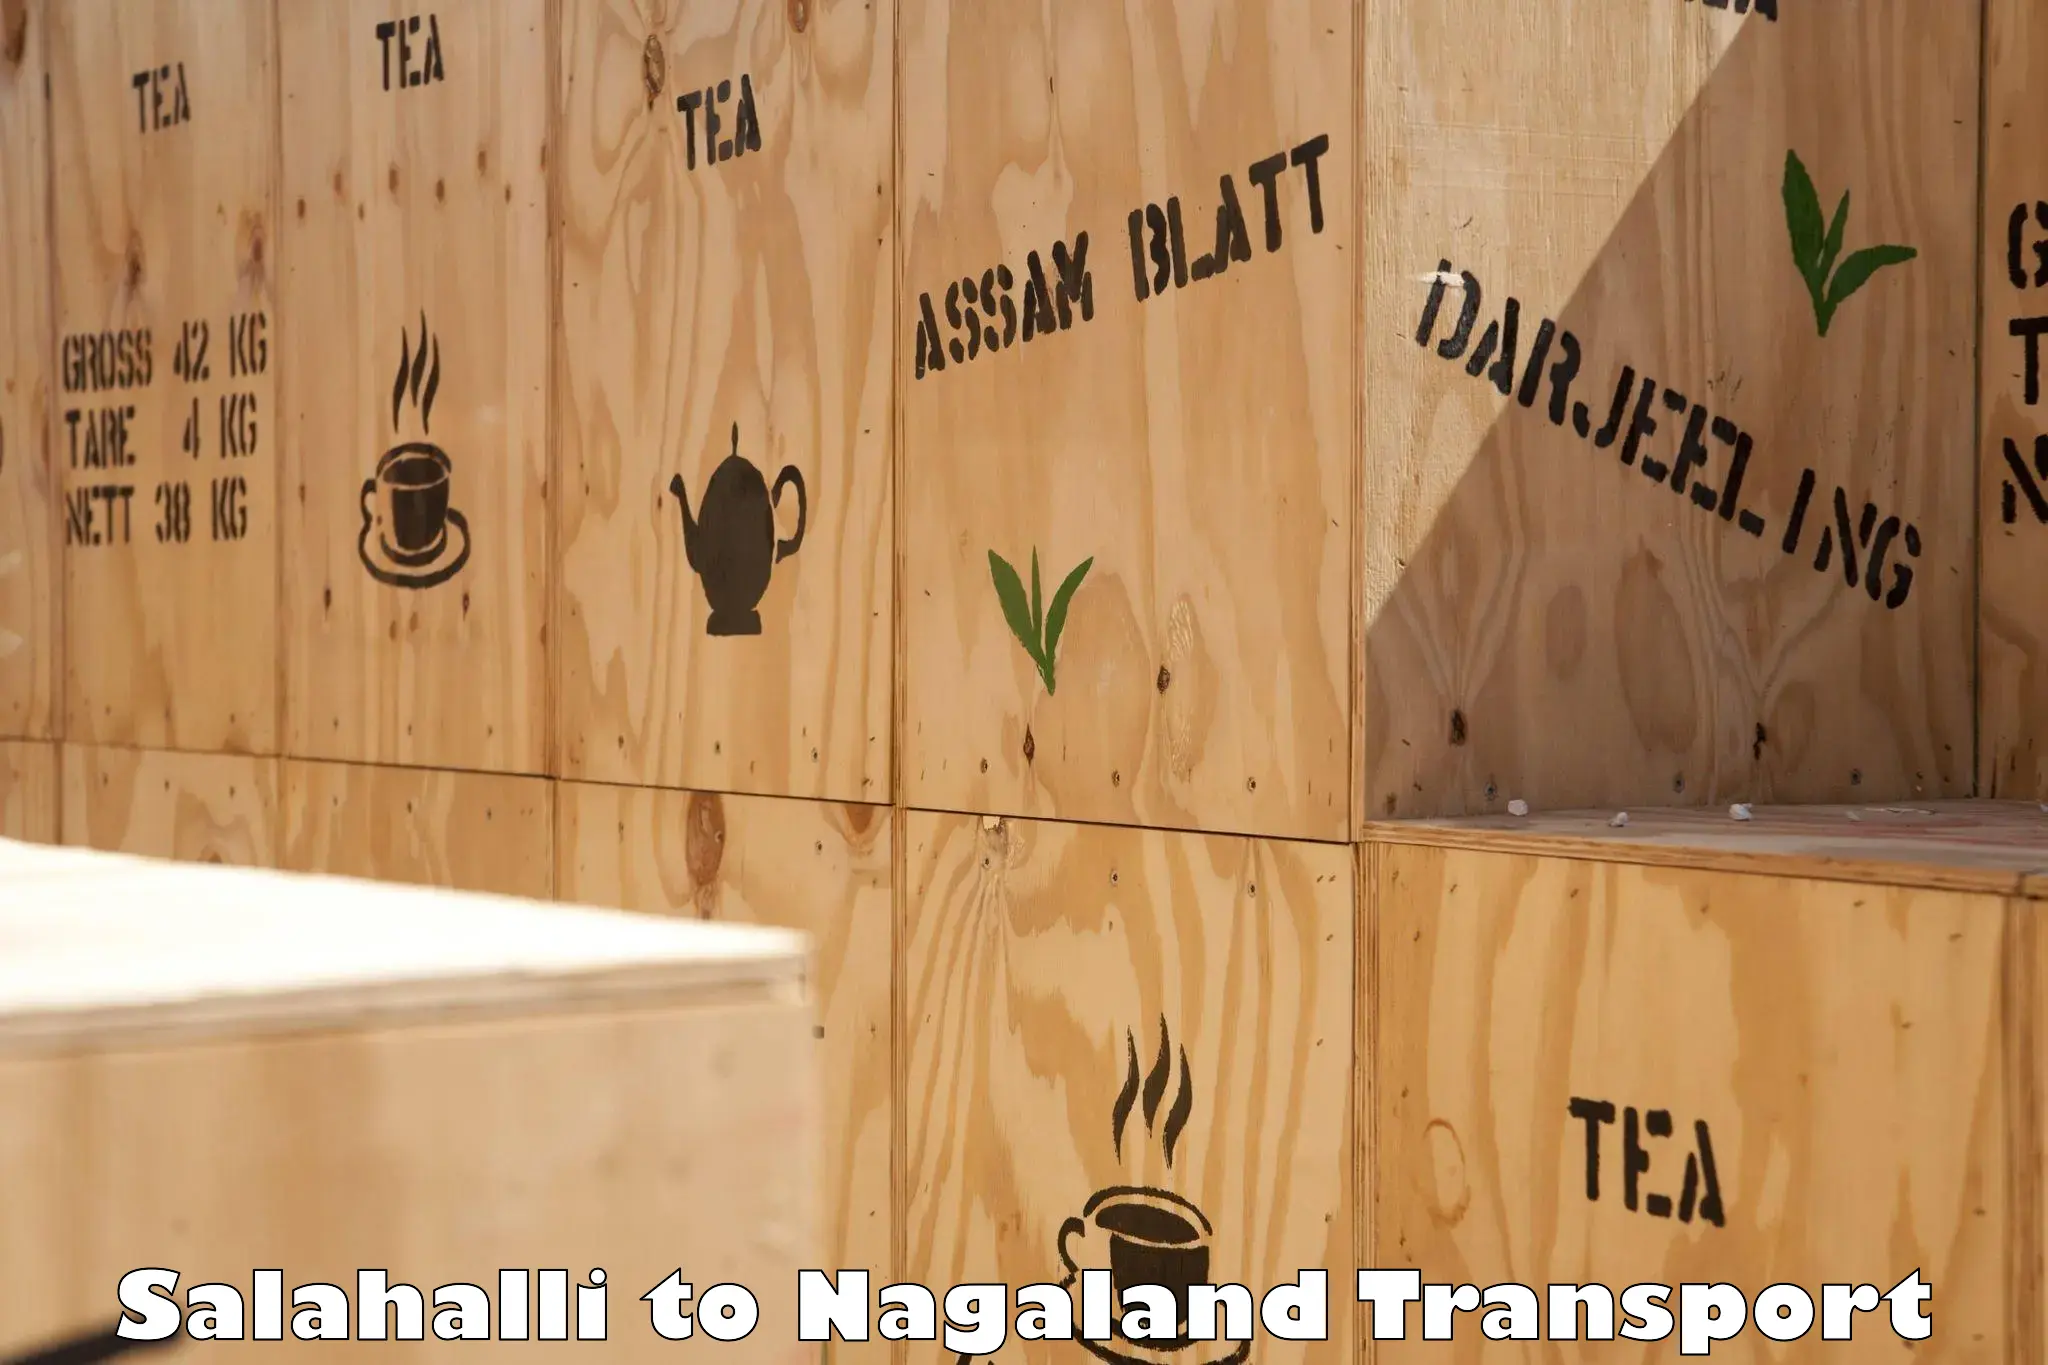 Lorry transport service Salahalli to NIT Nagaland